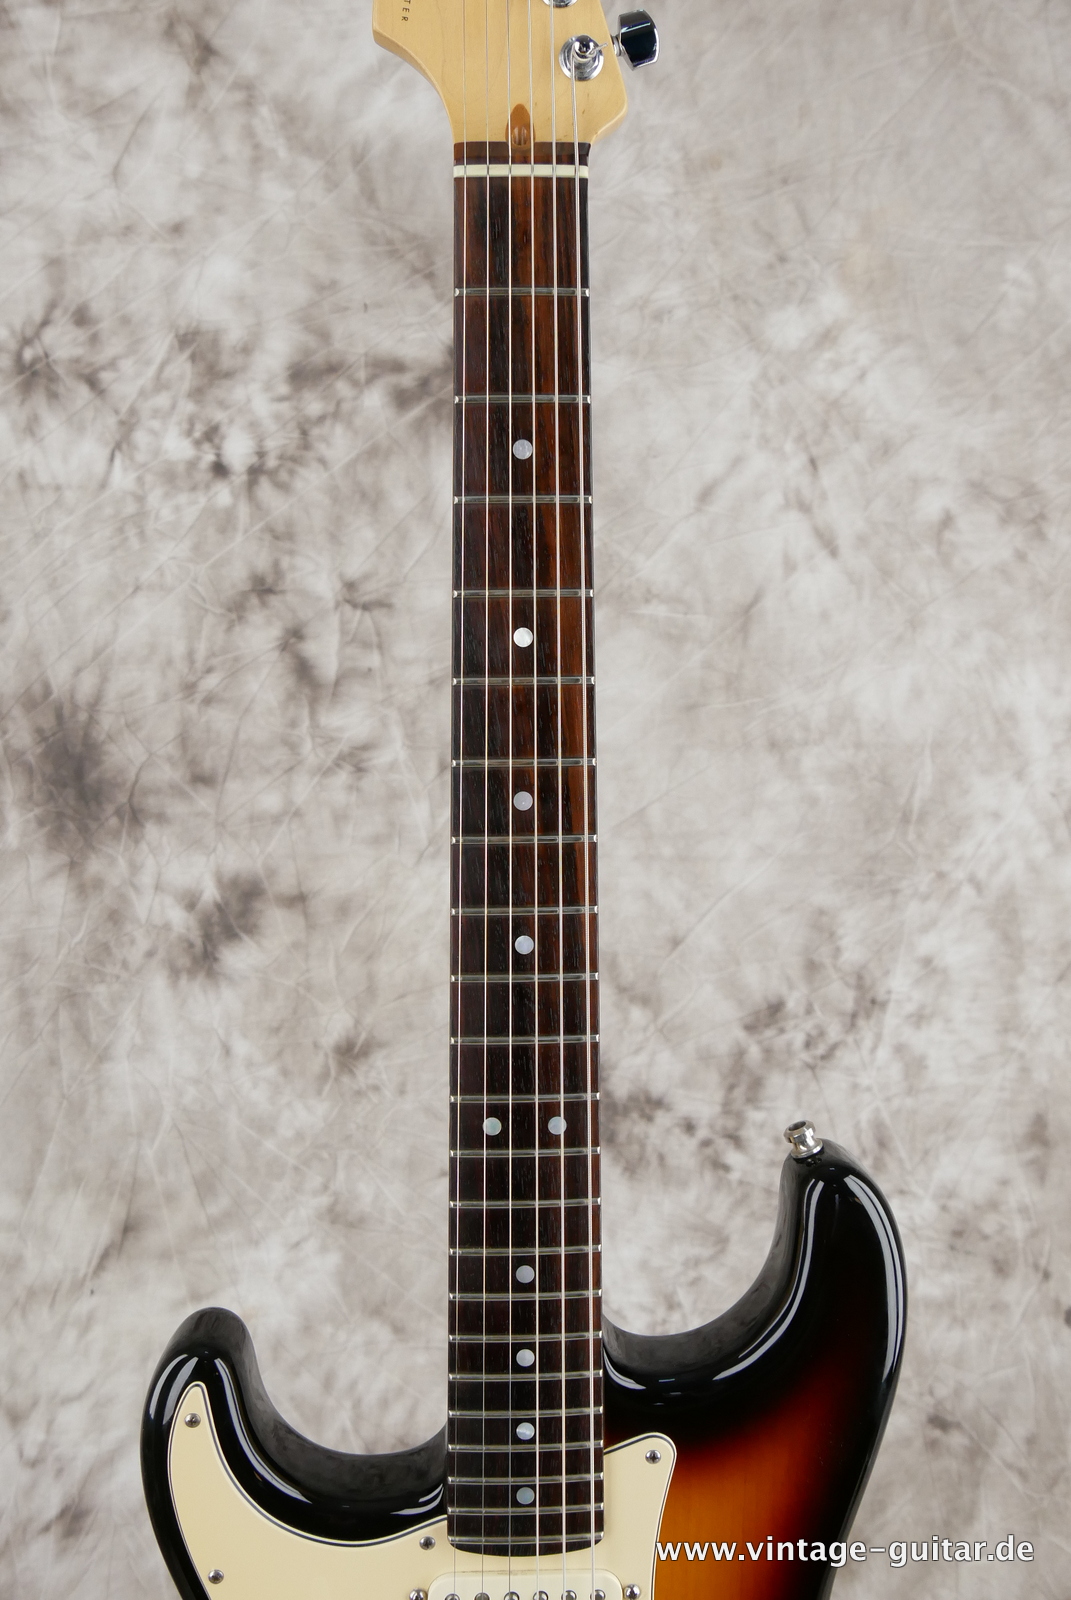 Fender_Stratocaster_American_Series_Diamond_Anniversary_60th_Left_handed_USA_sunburst-005.JPG